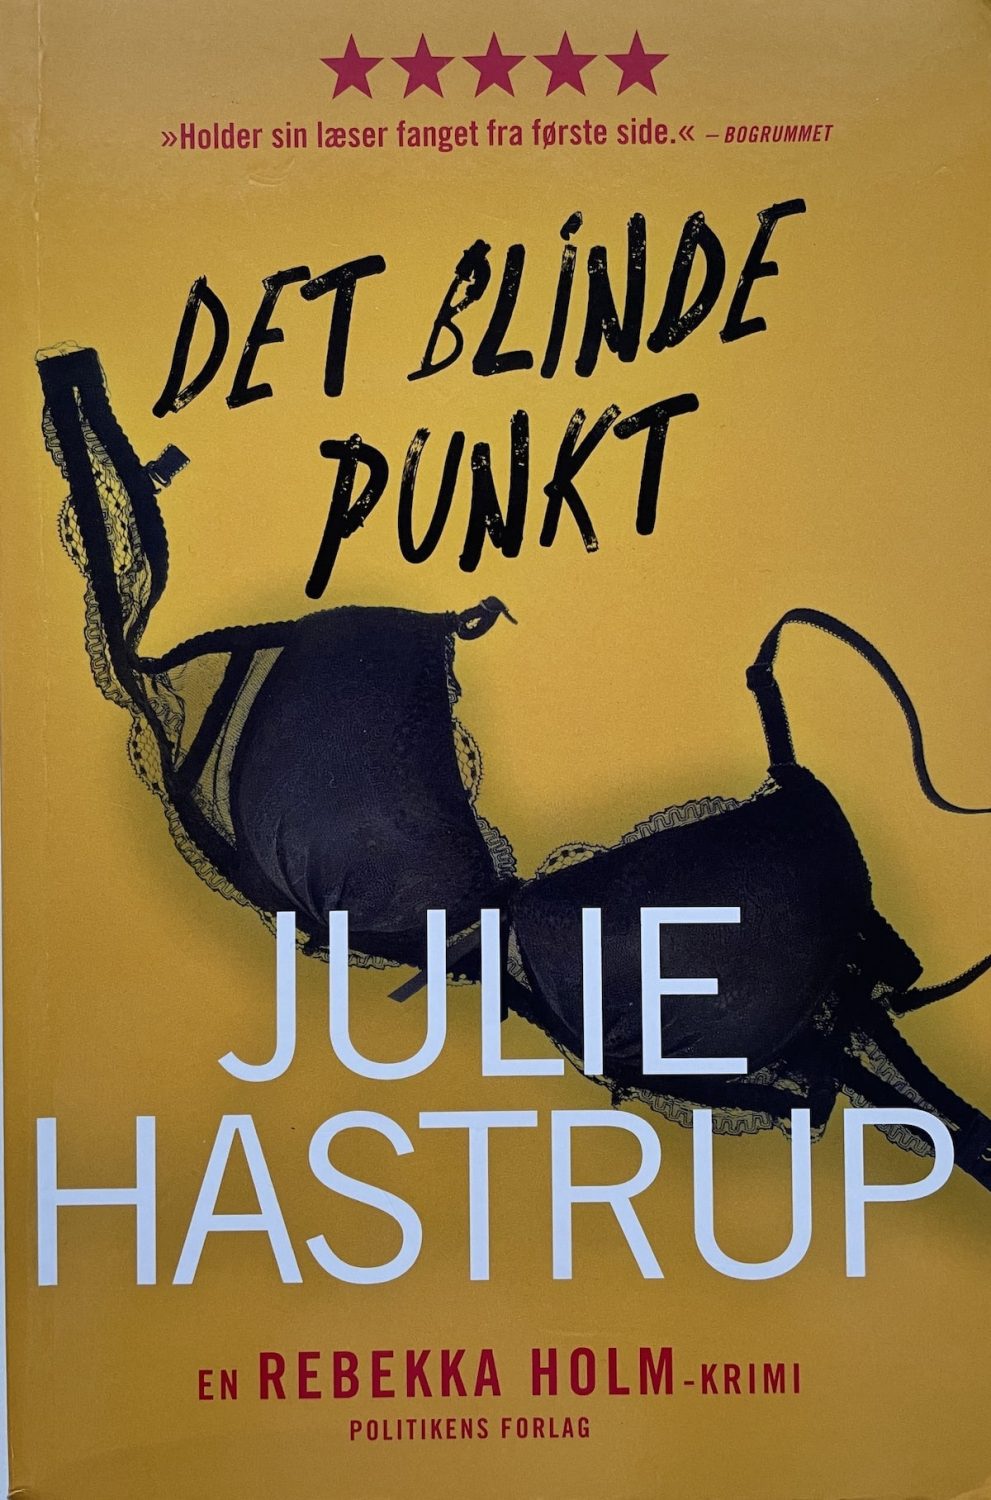 Det blinde punkt, Julie Hastrup, brugt bog